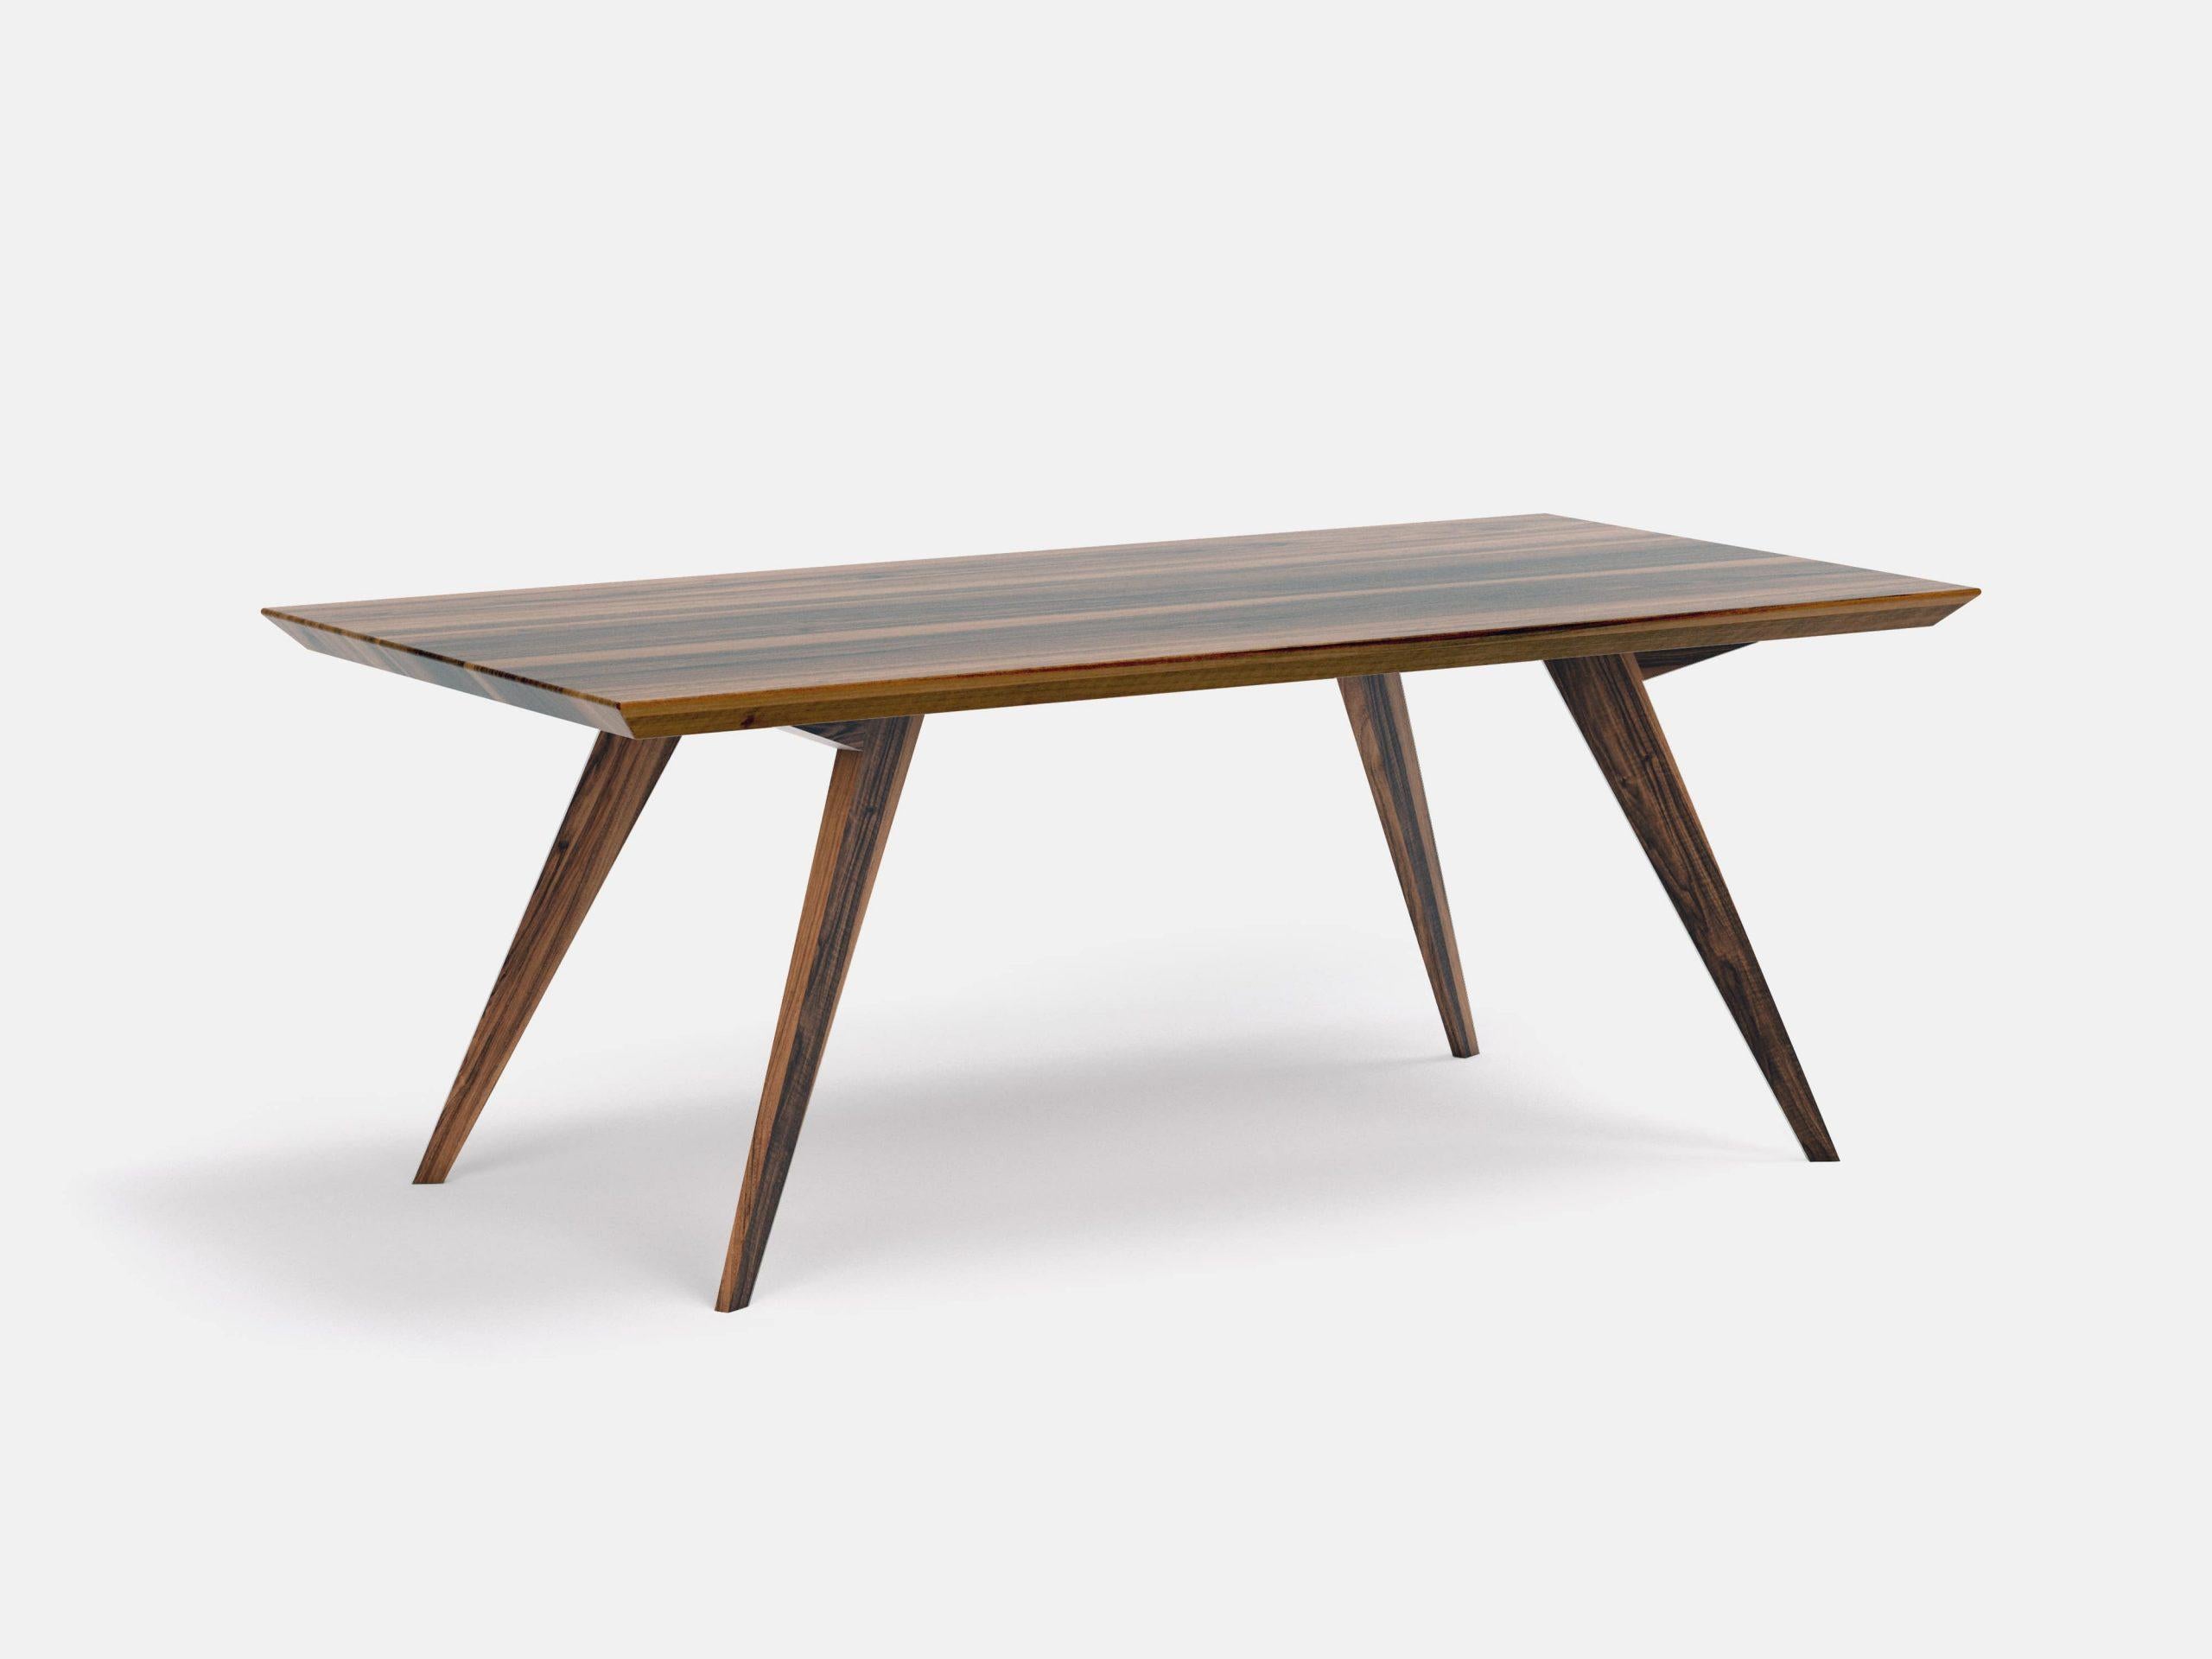 Table de salle à manger Minimaliste 250 en noyer
Dimensions : L 250 x D 100 x H 75 cm
MATERIAL : Noyer américain 100% bois massif


 

La table Roly-Poly est la preuve que le design permet de créer de la légèreté et de la simplicité, même